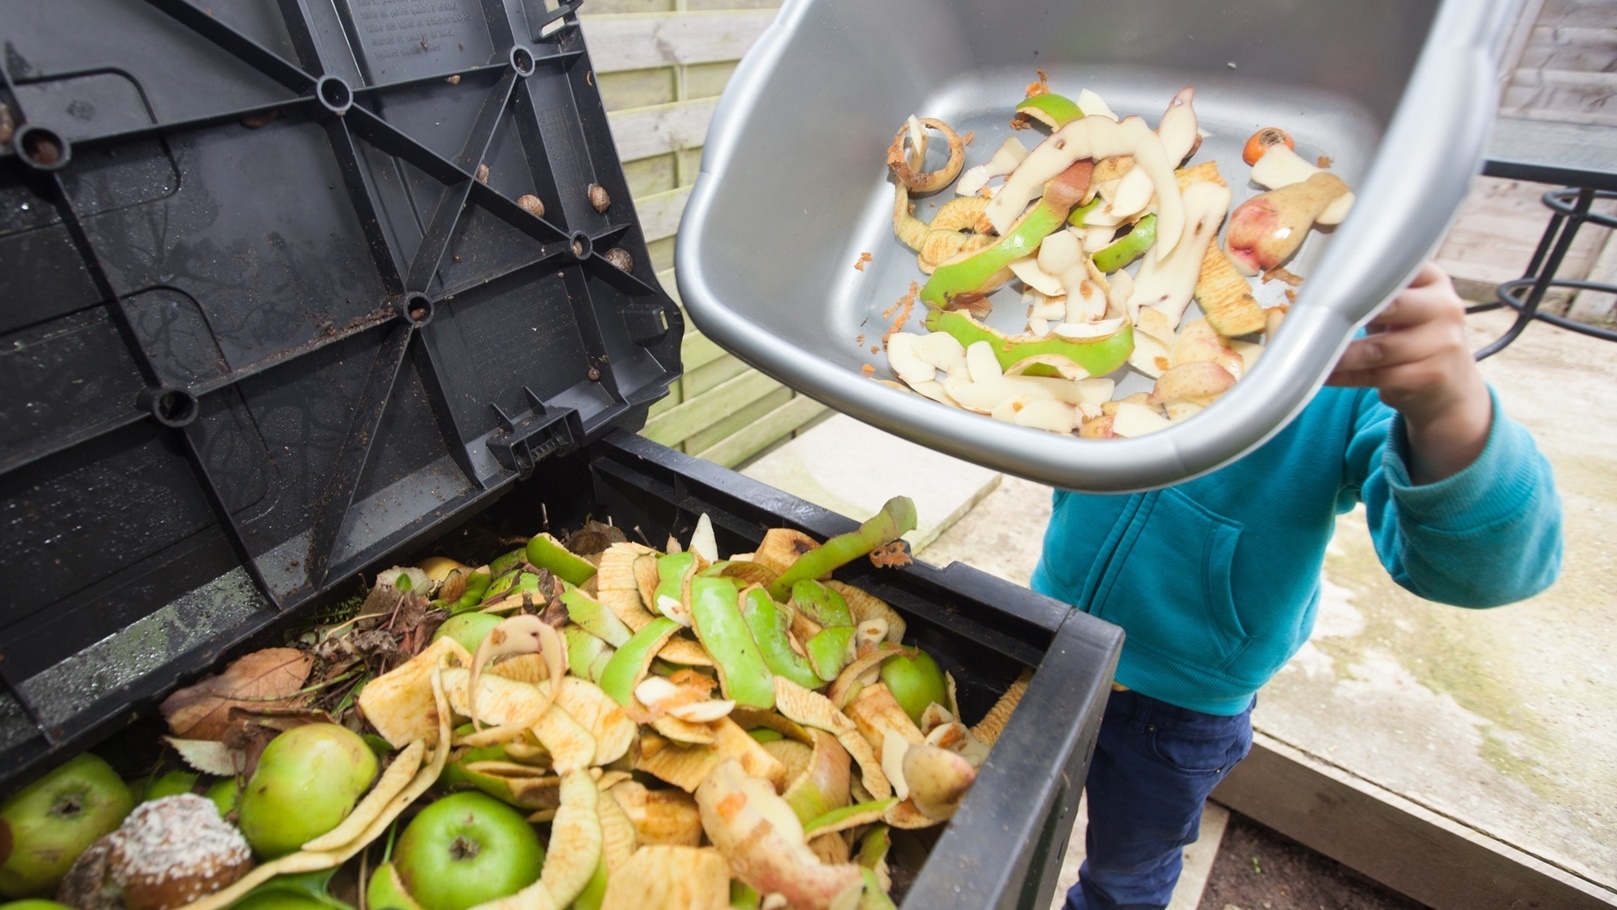 البحث عن حلول مستدامة لنفايات الطعام